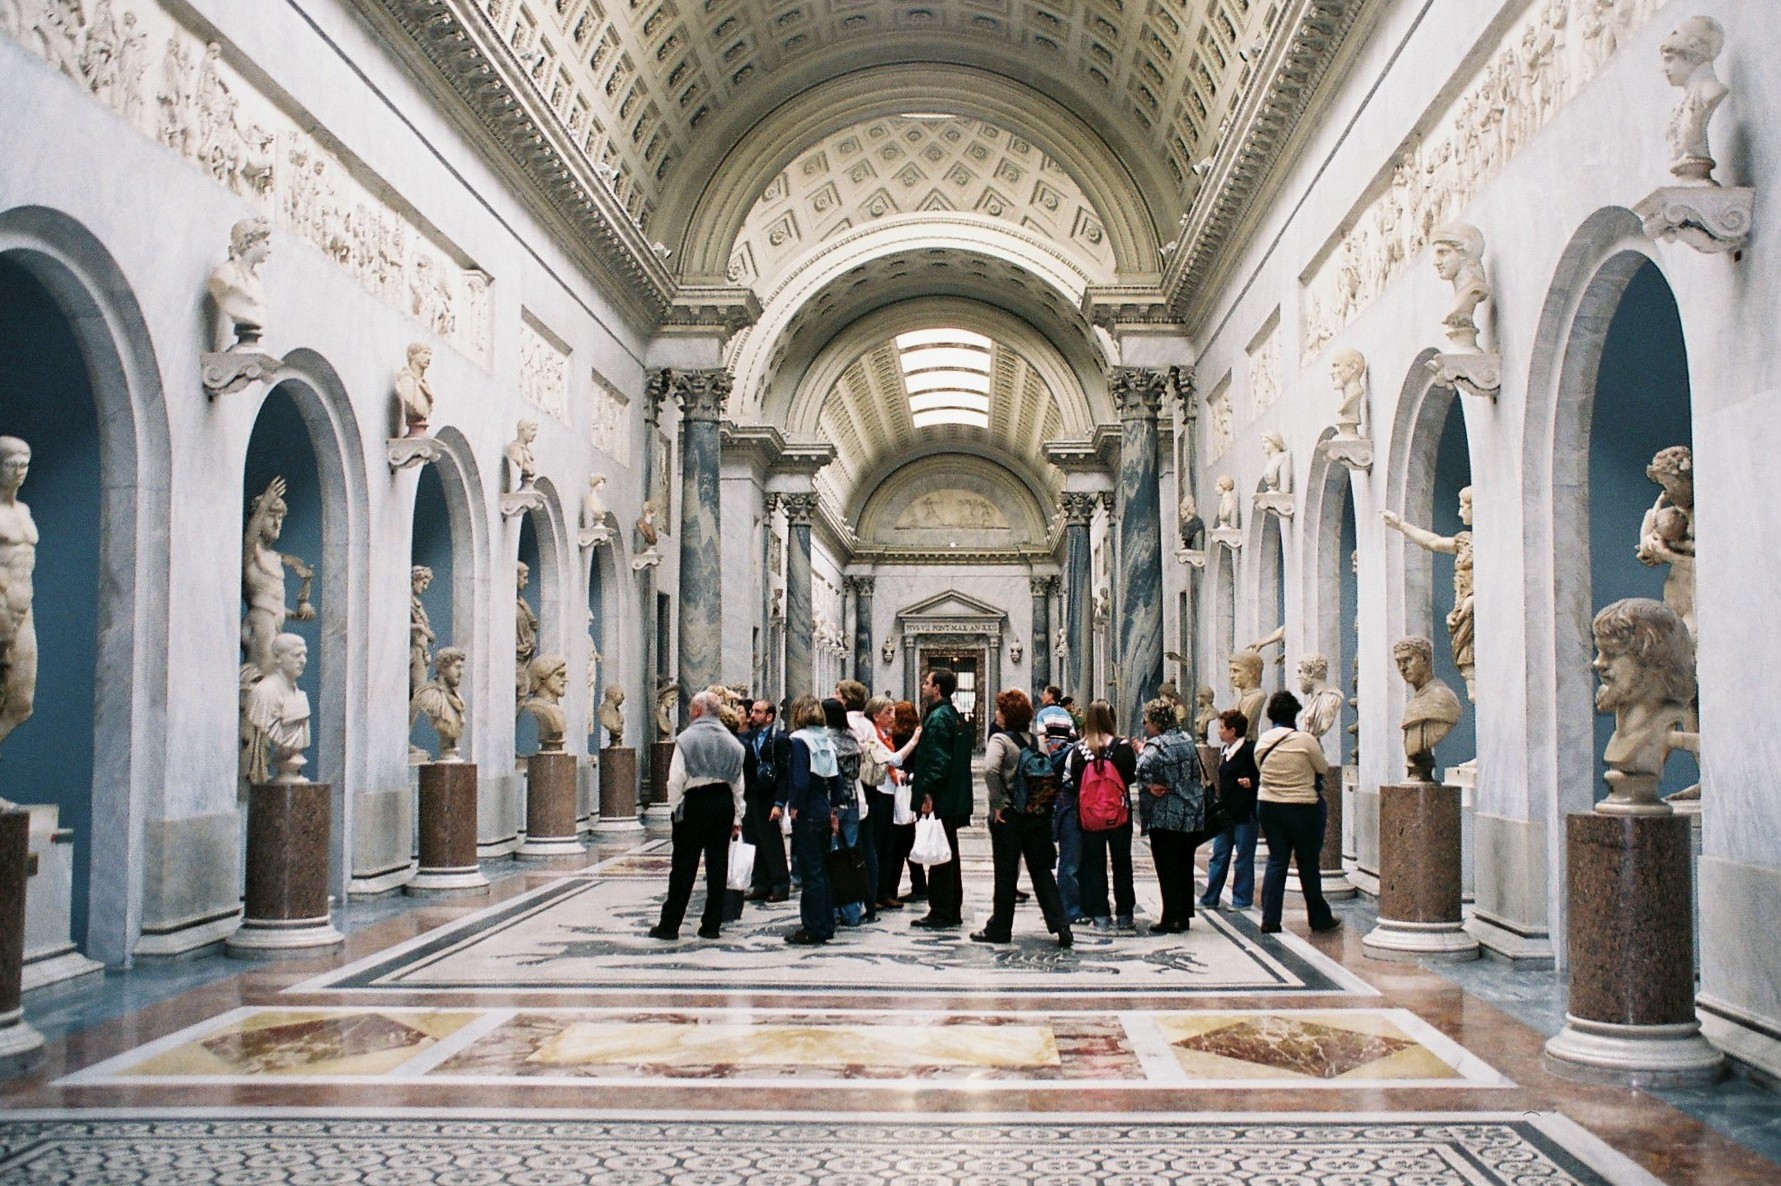 Visita ai Musei Vaticani in epoca pre-Covid.